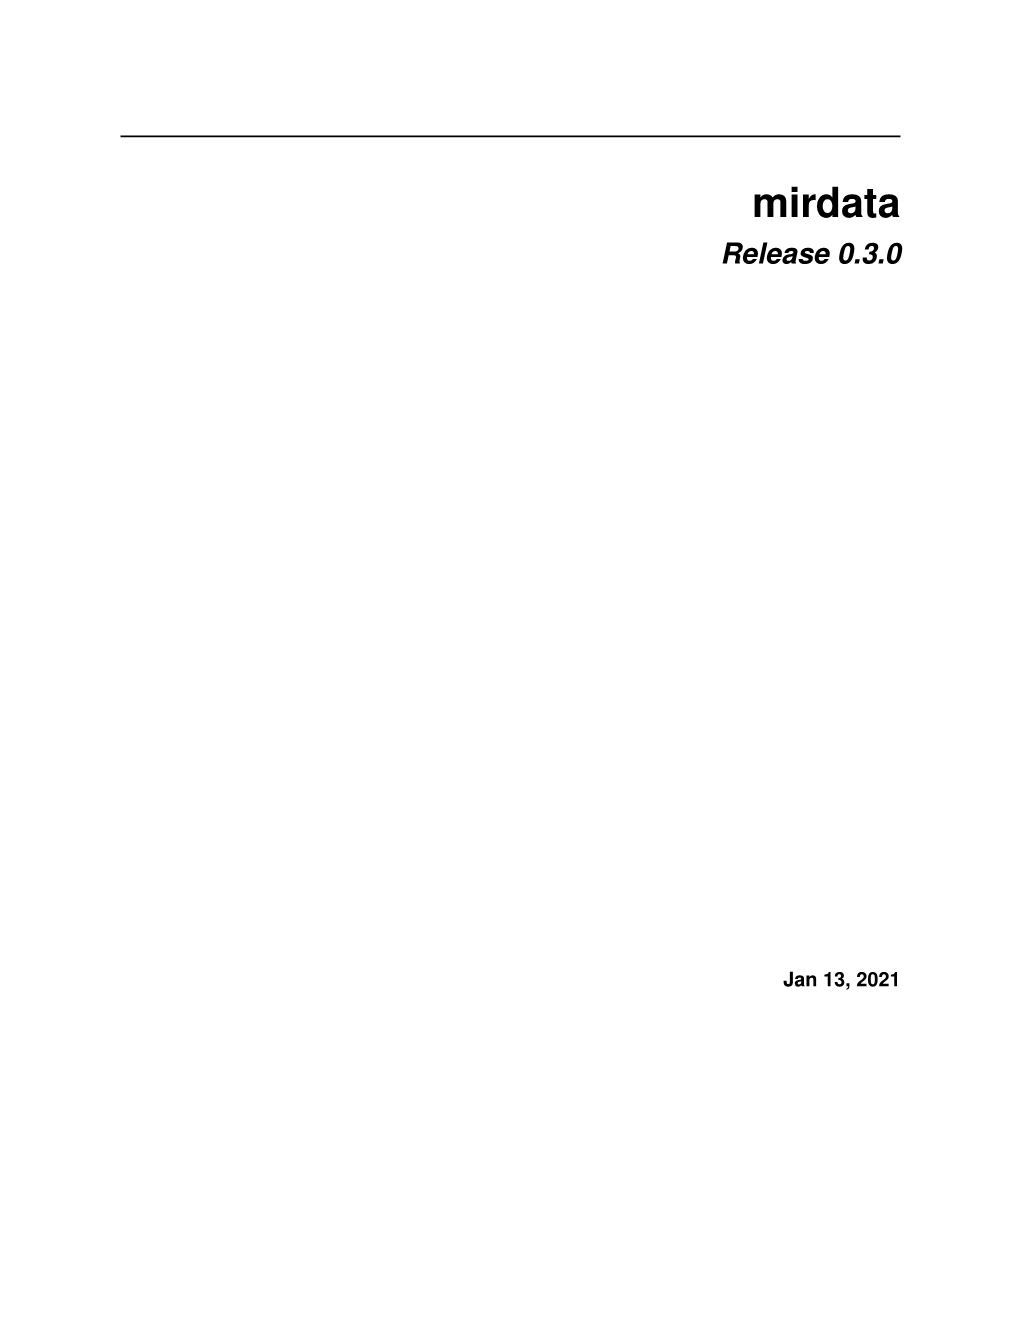 Mirdata Release 0.3.0